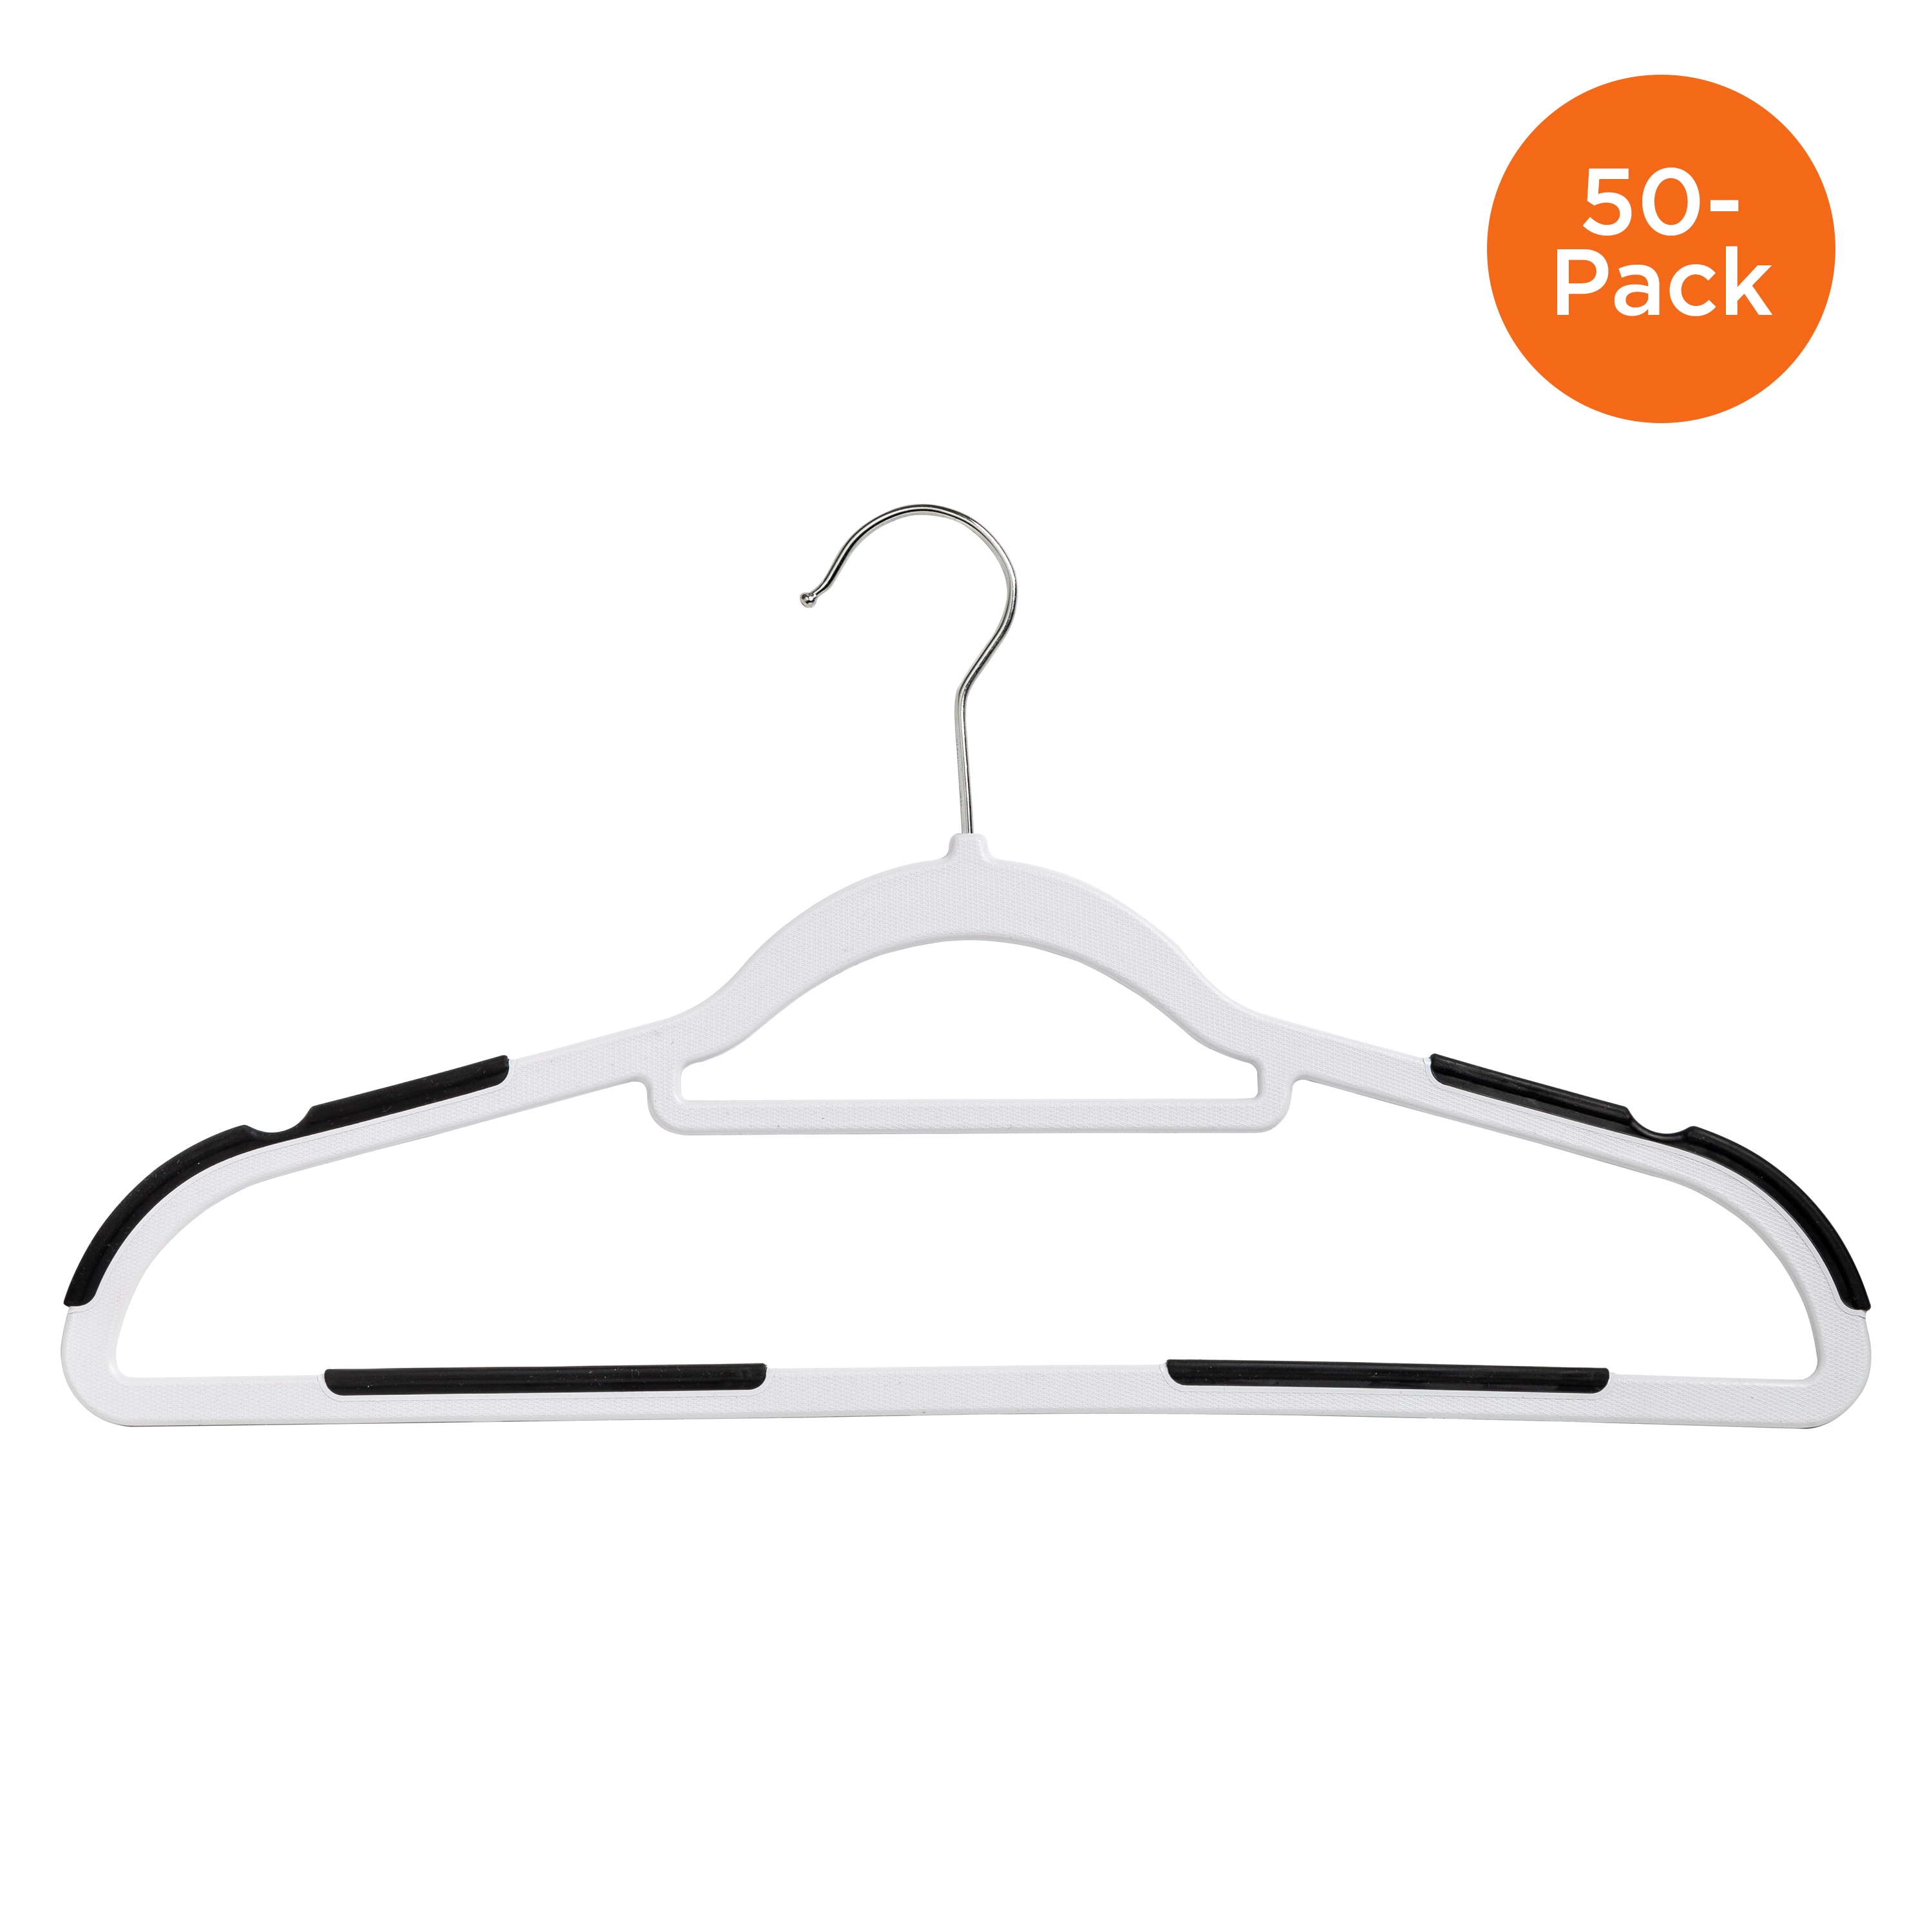 Honey-Can-Do 50-Pack Plastic Non-slip Grip Clothing Hanger (Grey